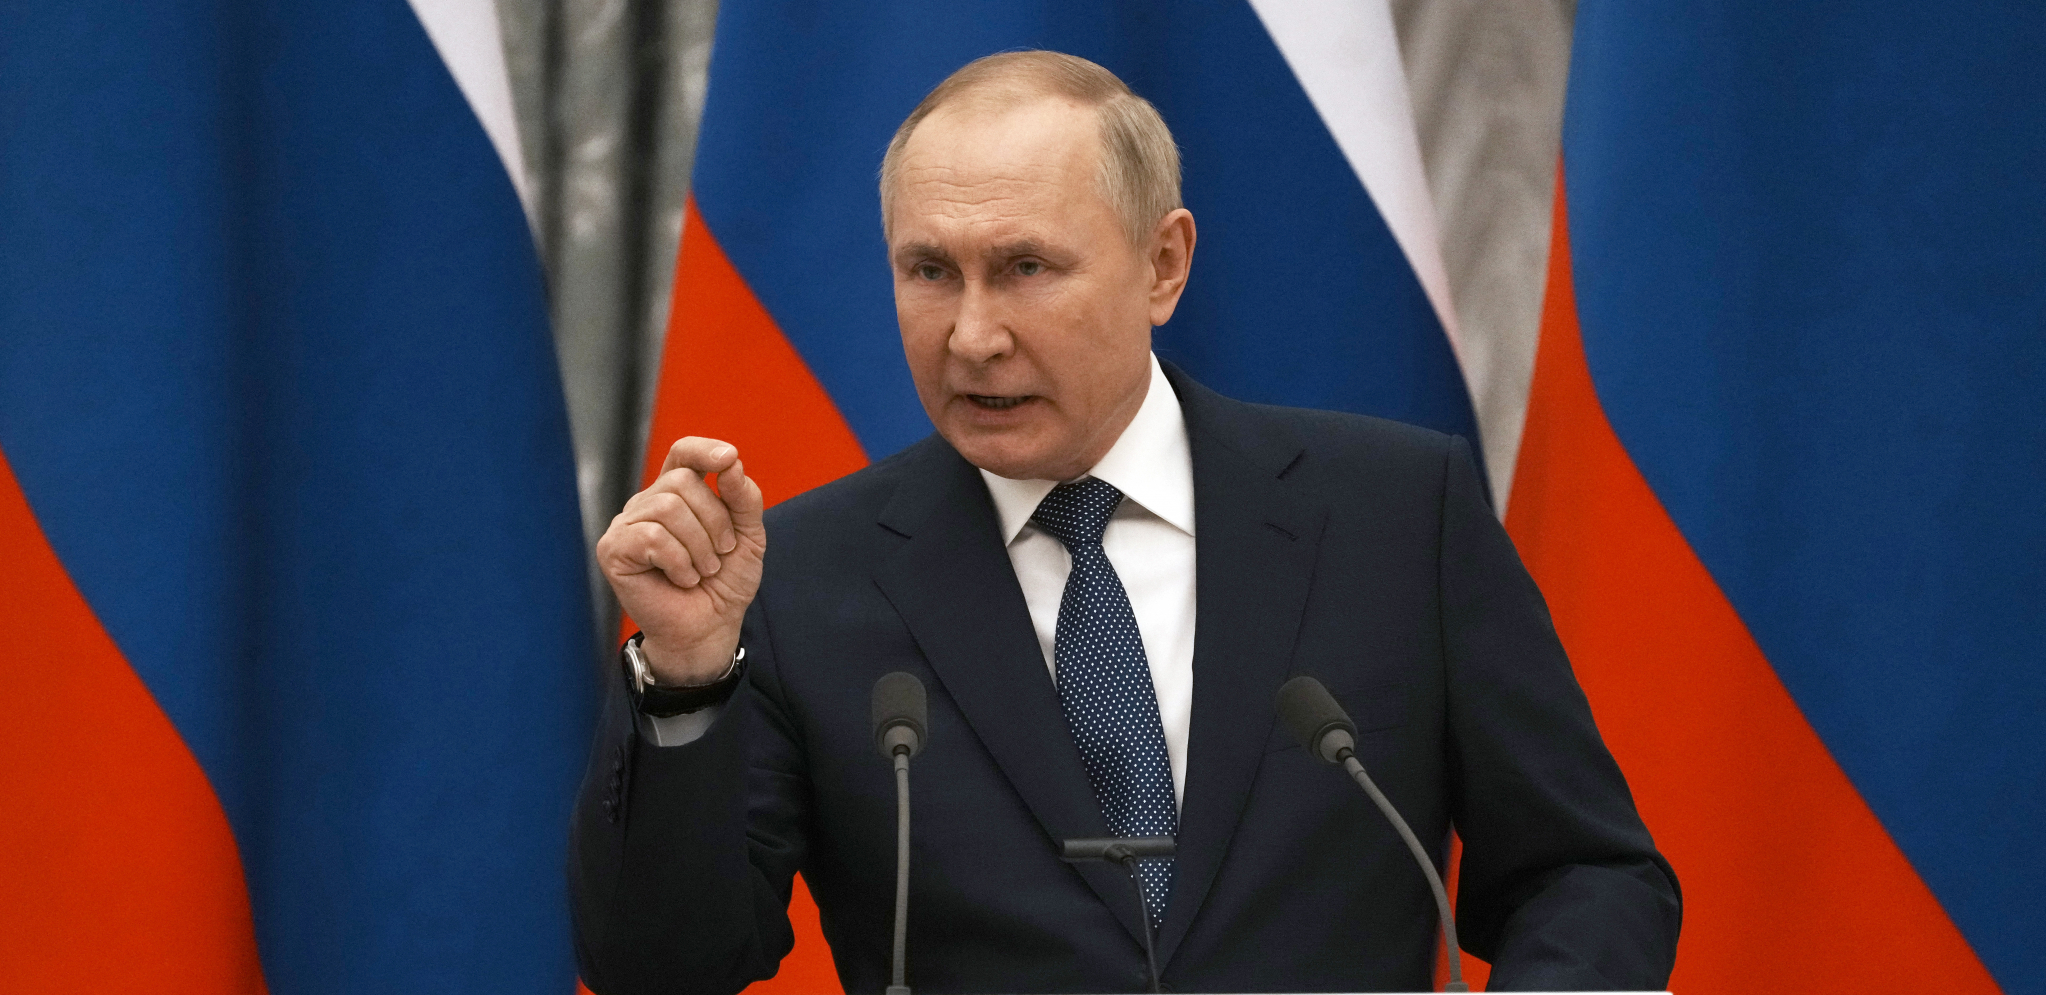 "UDVOSTRUČITE, MA UTROSTRUČITE SLANJE ORUŽJA!" Putinova izjava da je Rusija tek počela, može značiti samo jedno...